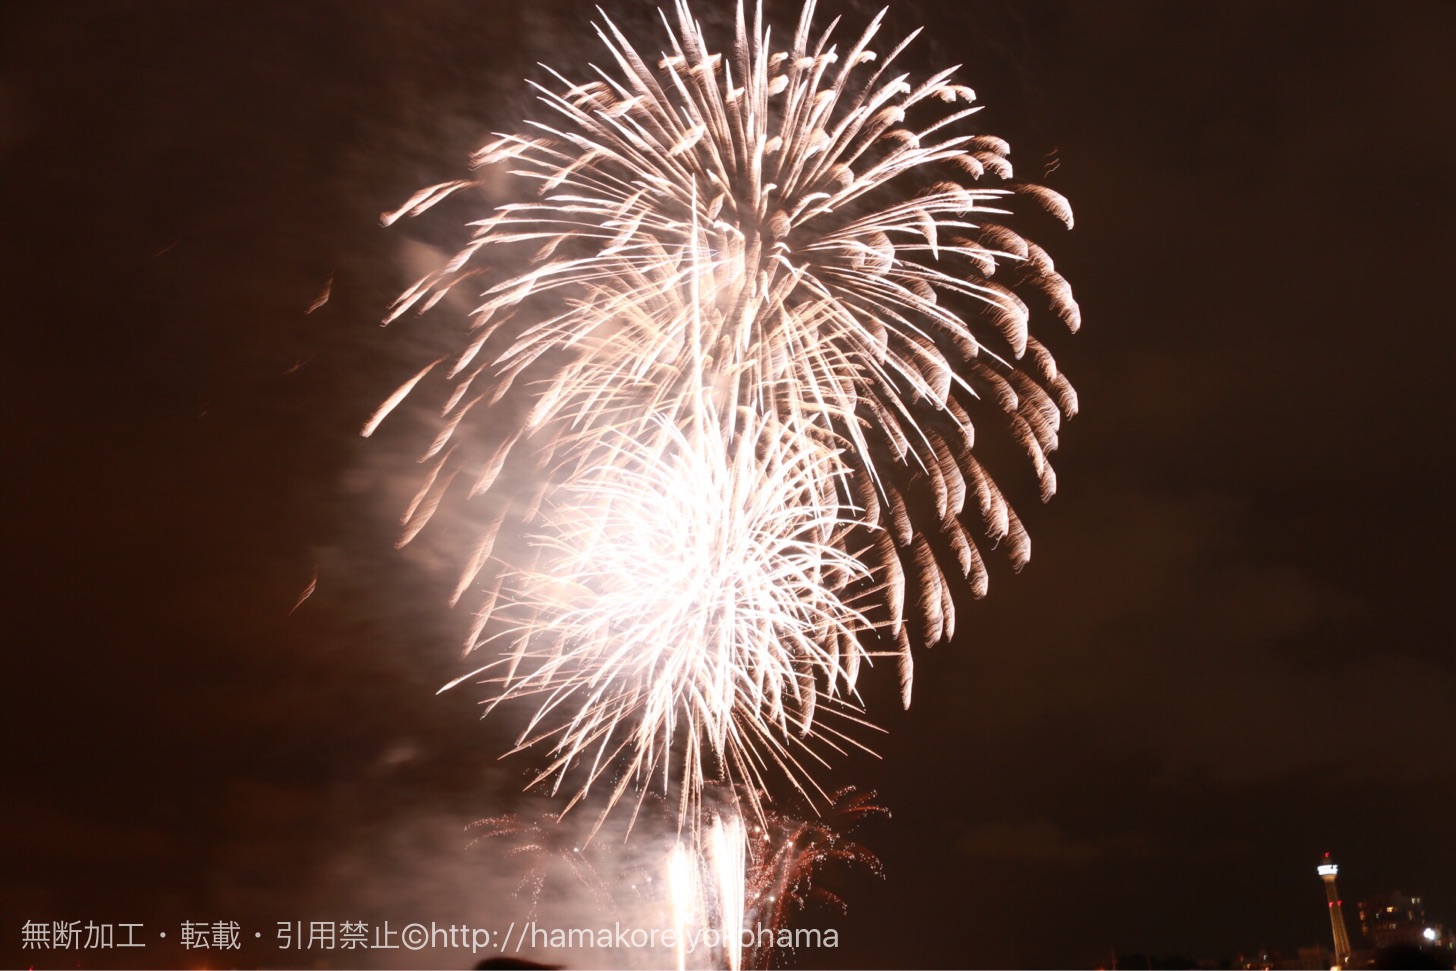 2018年 横浜花火大会「横浜スパークリングトワイライト」は7月14日・15日開催！花火観賞席も